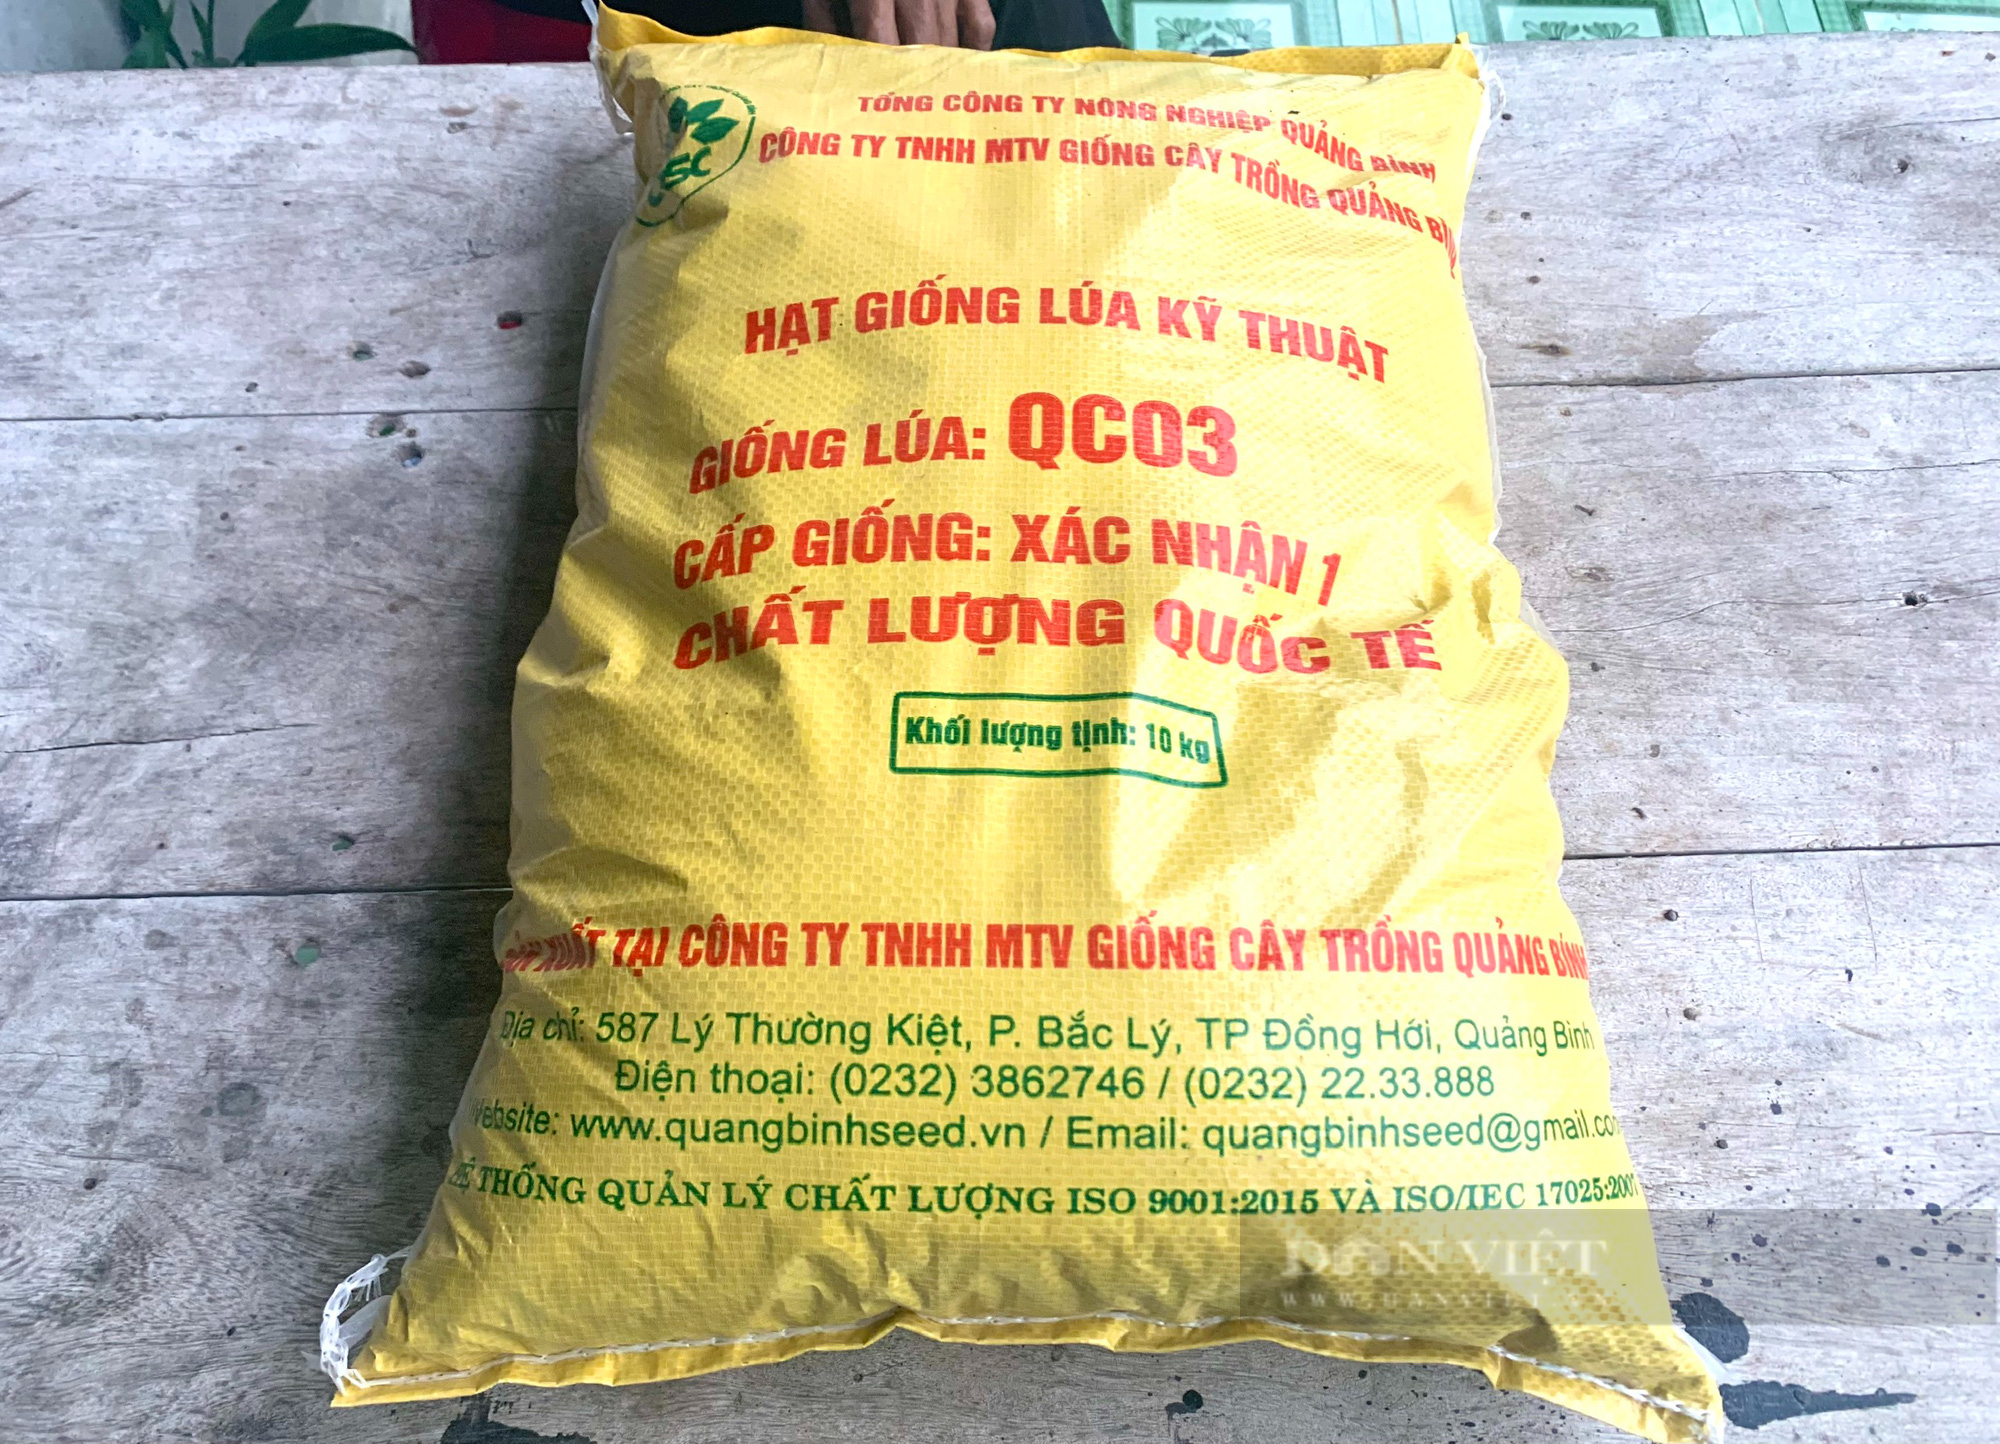 Vụ công ty ở Quảng Bình bán lúa giống chưa được cấp phép cho nông dân: Trên bảo dưới không nghe - Ảnh 6.